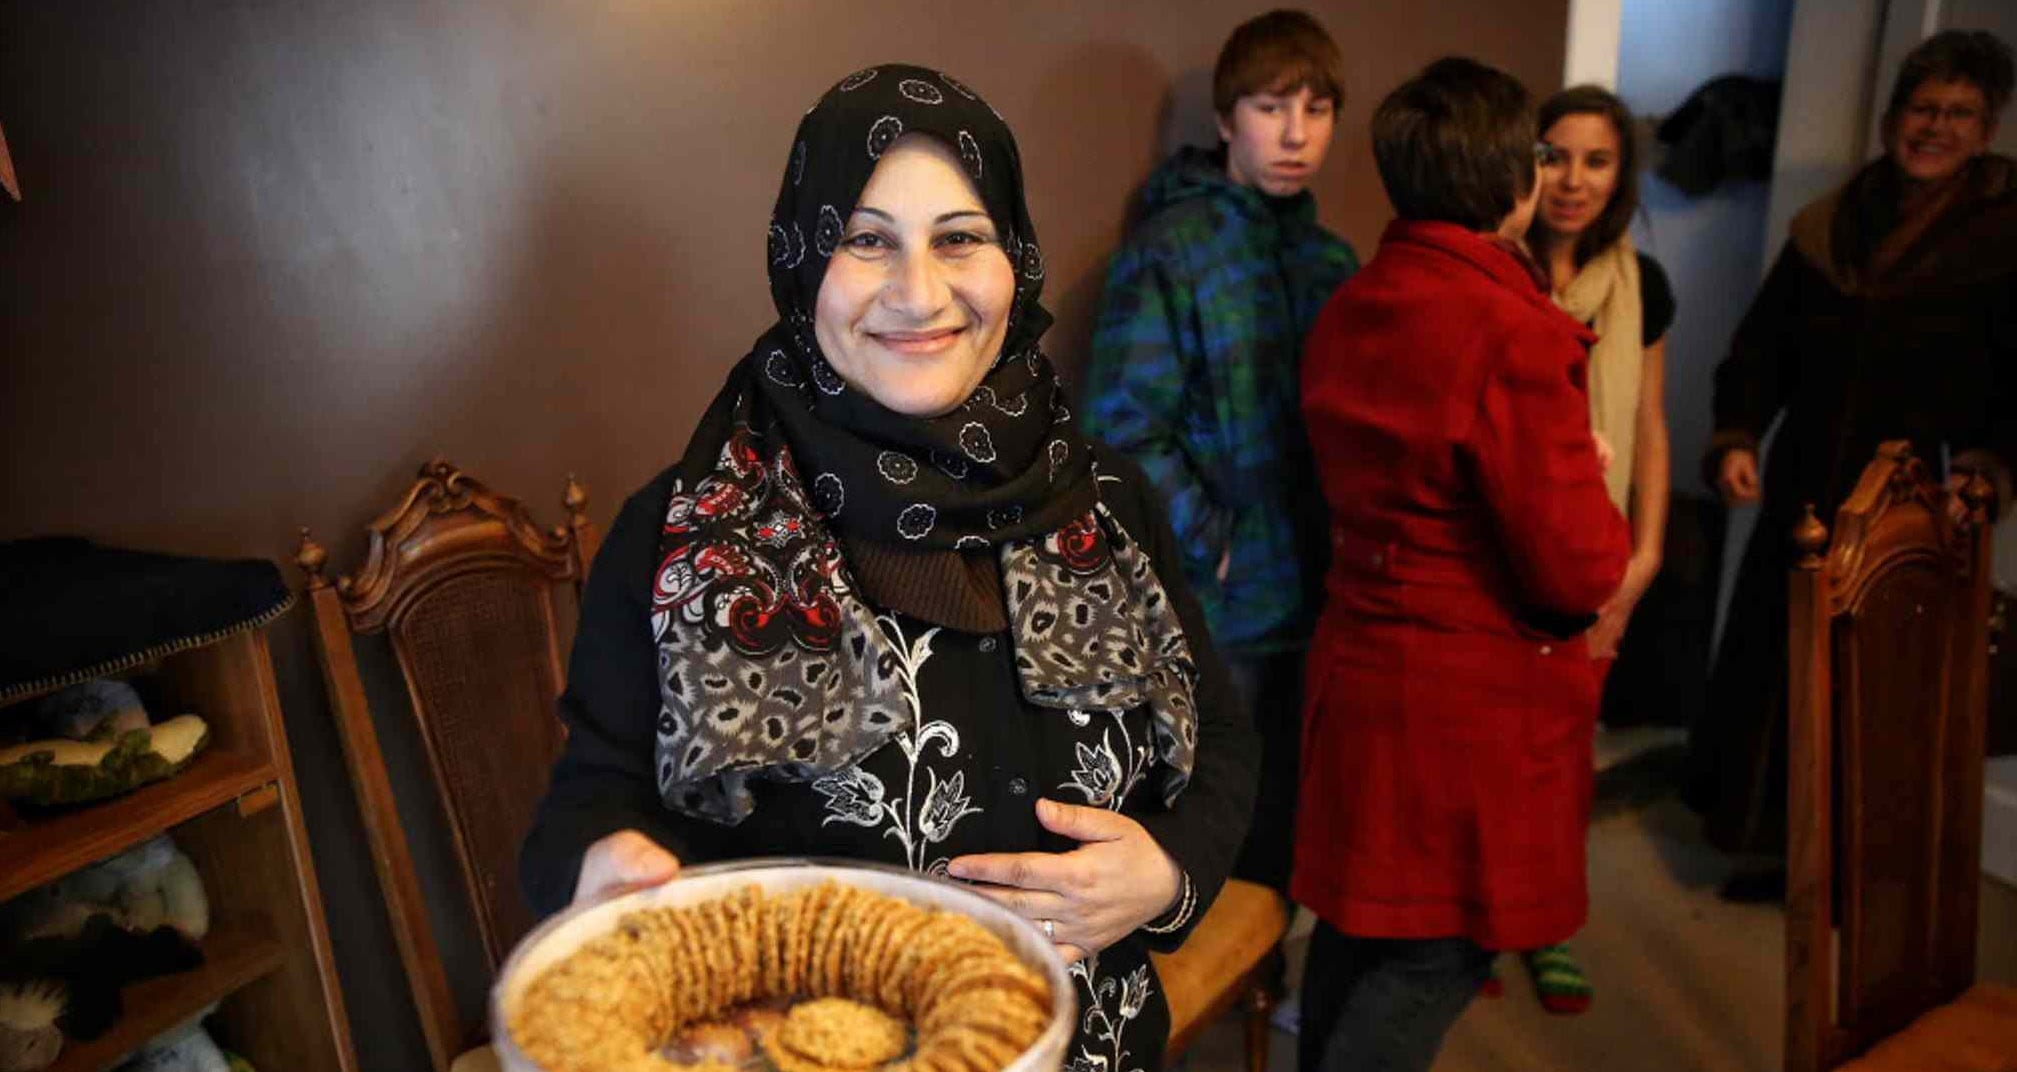 Ahlam Dib serves cookies